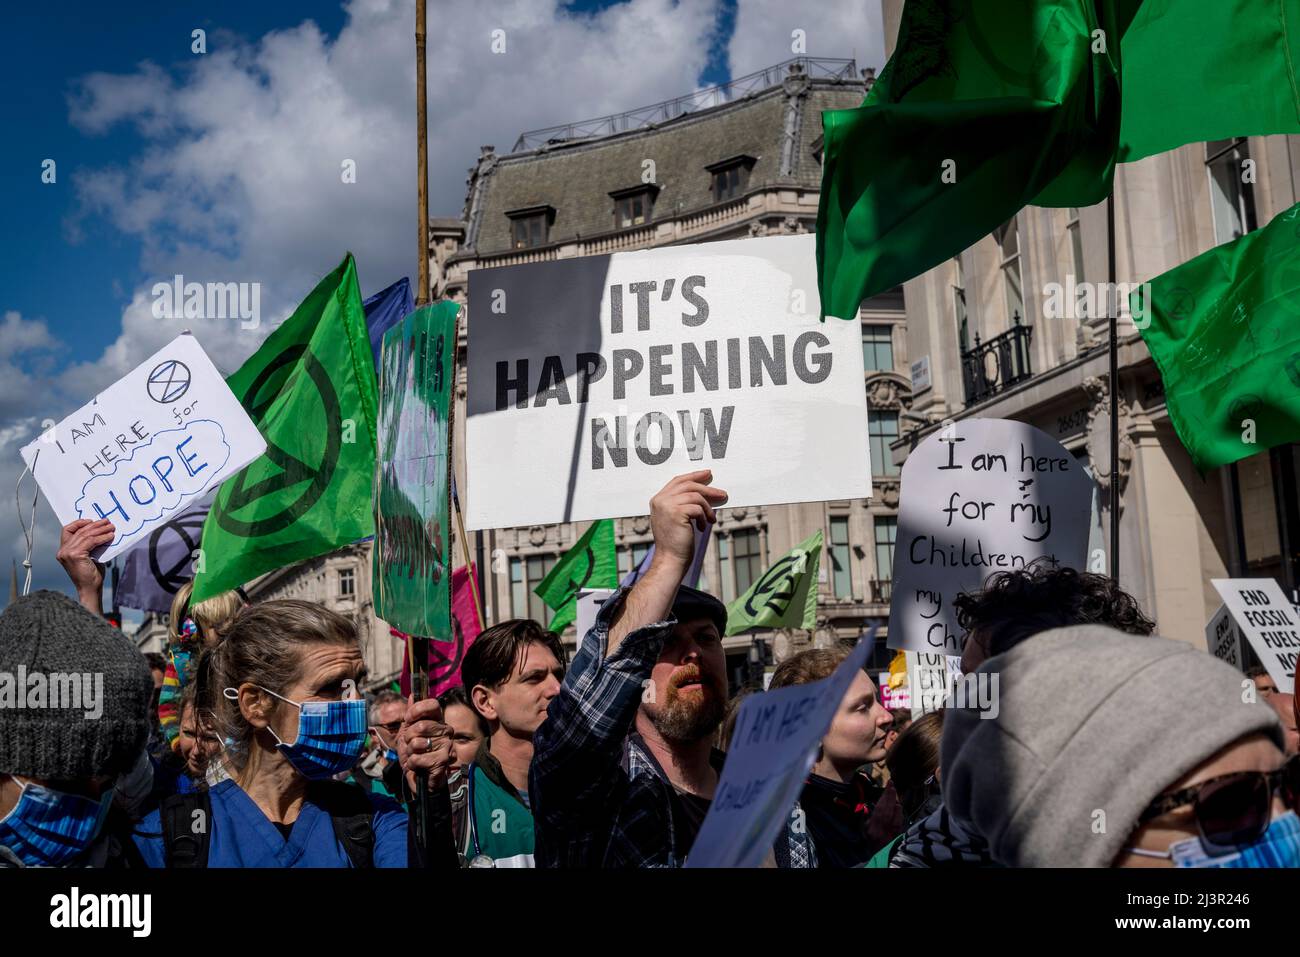 Sta accadendo ora placard, non saremo spettatori, una protesta della ribellione di estinzione che combatte per la giustizia climatica, nel centro di Londra, 09.04.2022, Londra, Inghilterra, REGNO UNITO Foto Stock